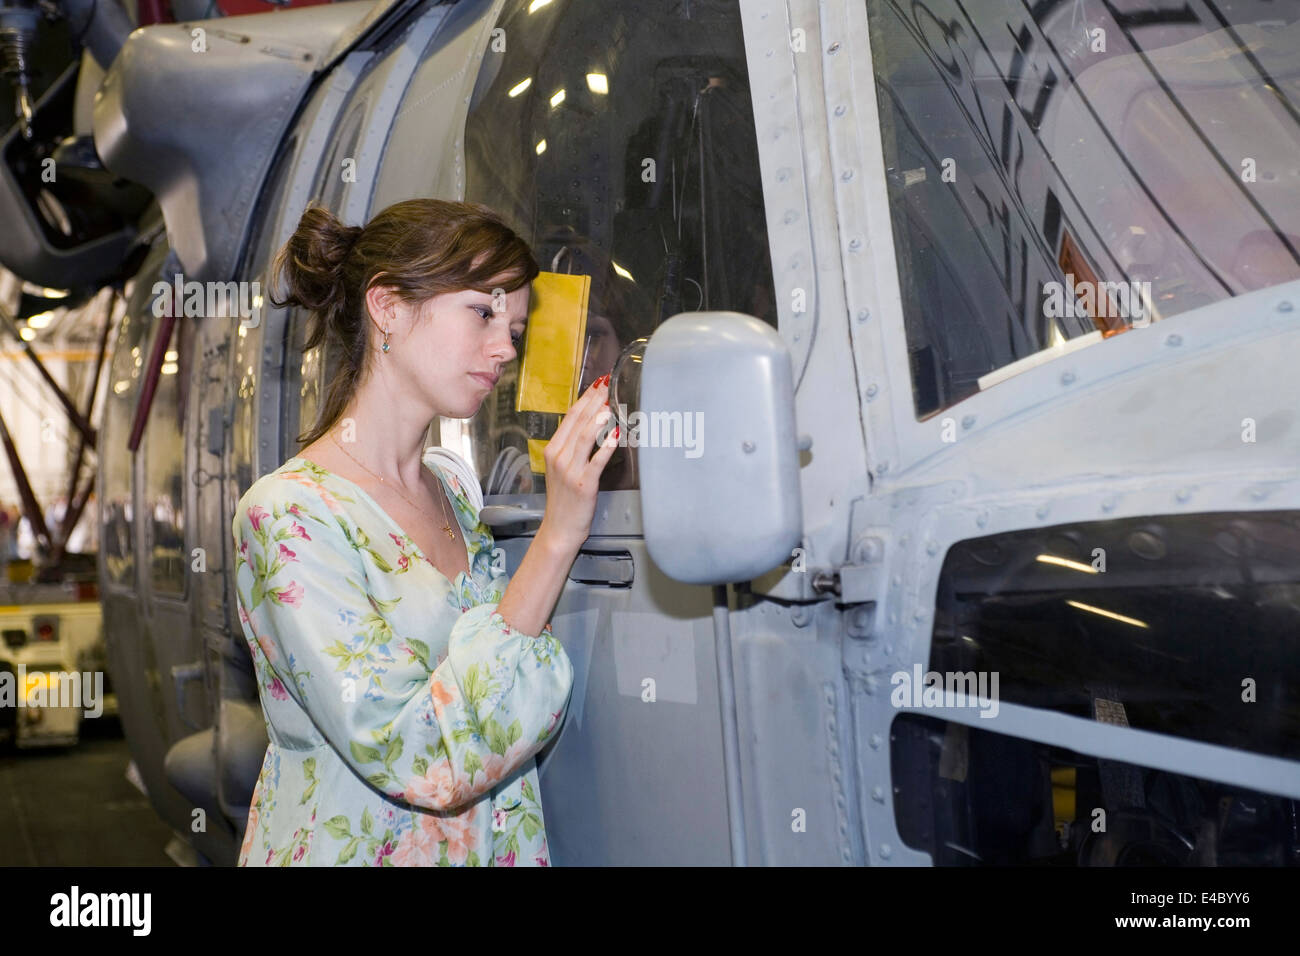 Jeune fille se tient à côté d'un hélicoptère Seahawk Sikorsky. Banque D'Images